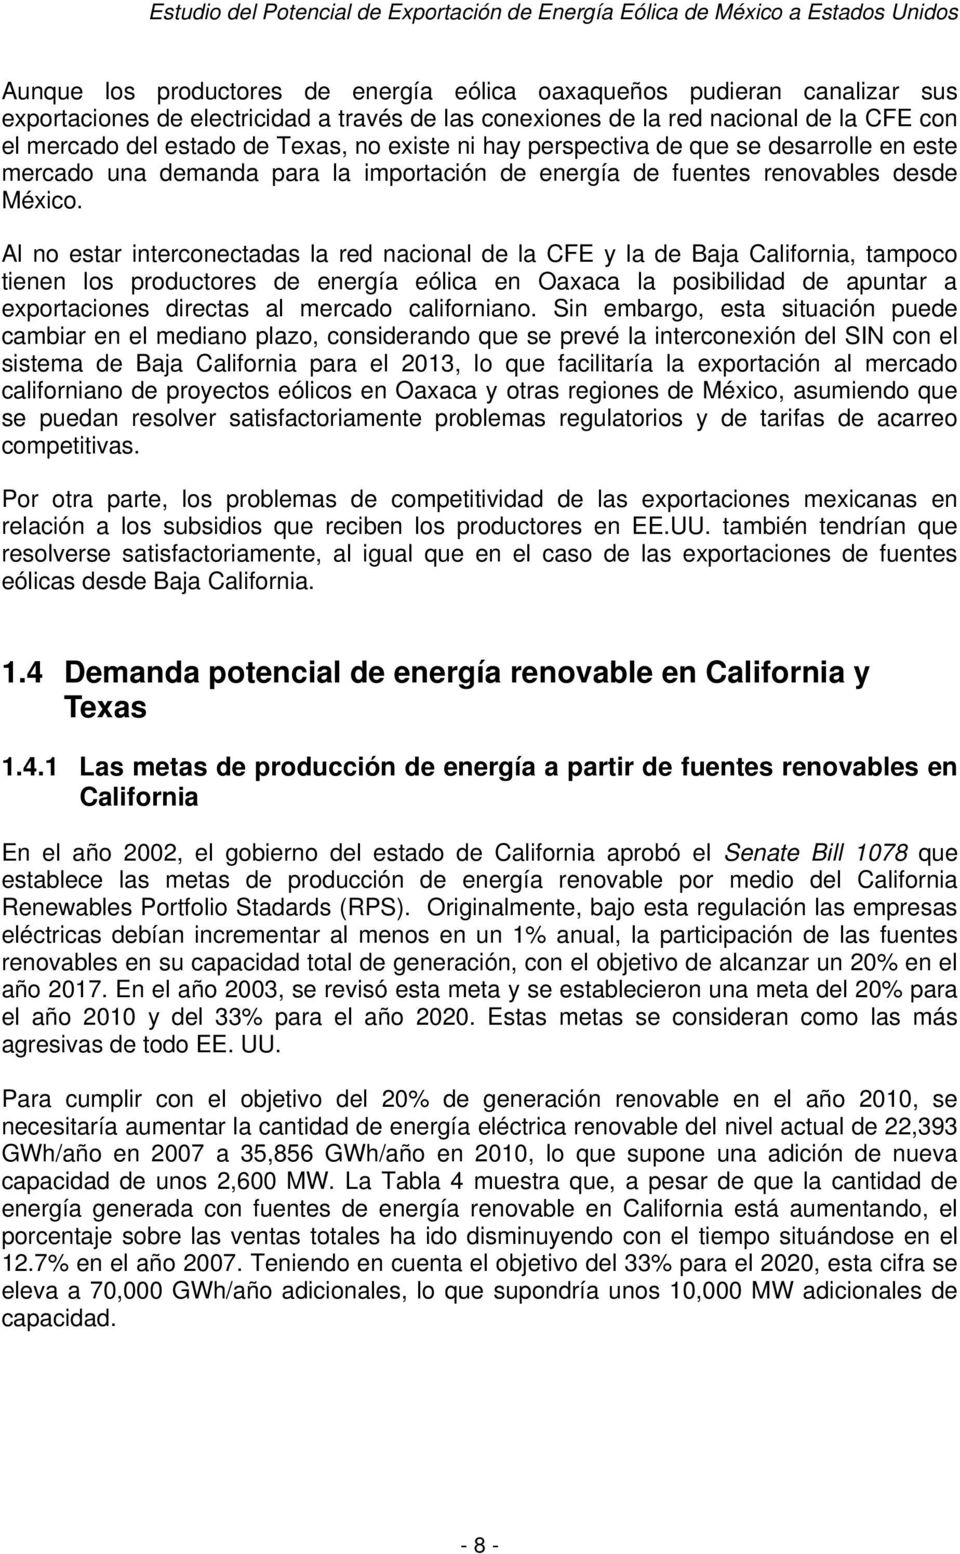 Al no estar interconectadas la red nacional de la CFE y la de Baja California, tampoco tienen los productores de energía eólica en Oaxaca la posibilidad de apuntar a exportaciones directas al mercado